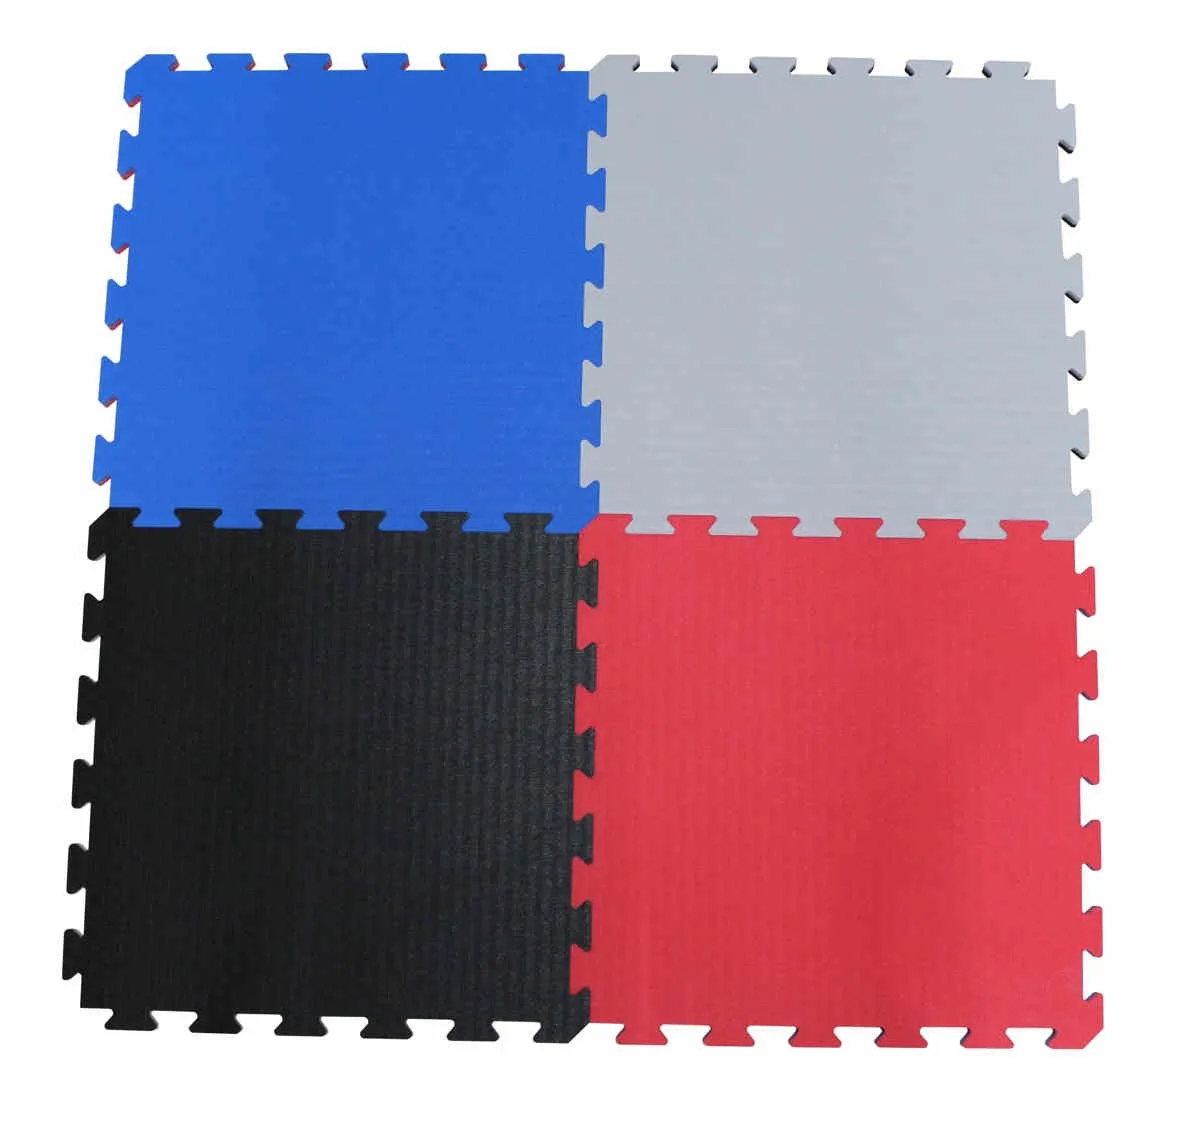 Martial arts mat K20L red/blue 50x50 x 2cm